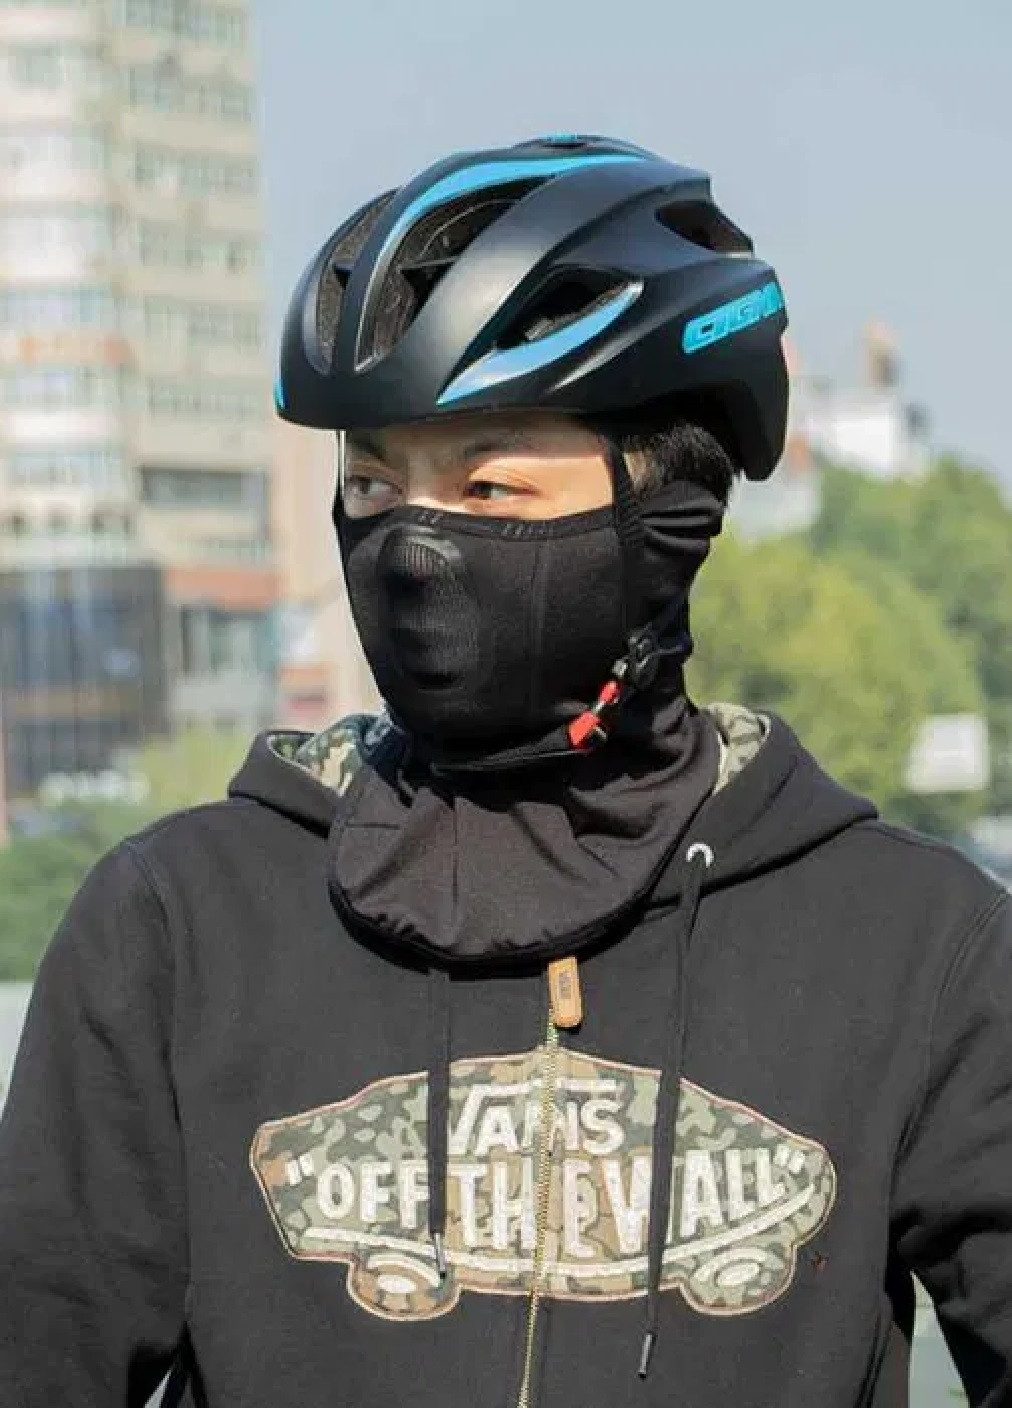 Unbranded термо маска балаклава зимовий бафф шарф підшоломник лижна шапка вітрозахисна (473568-prob) чорна однотонний чорний спортивний виробництво -